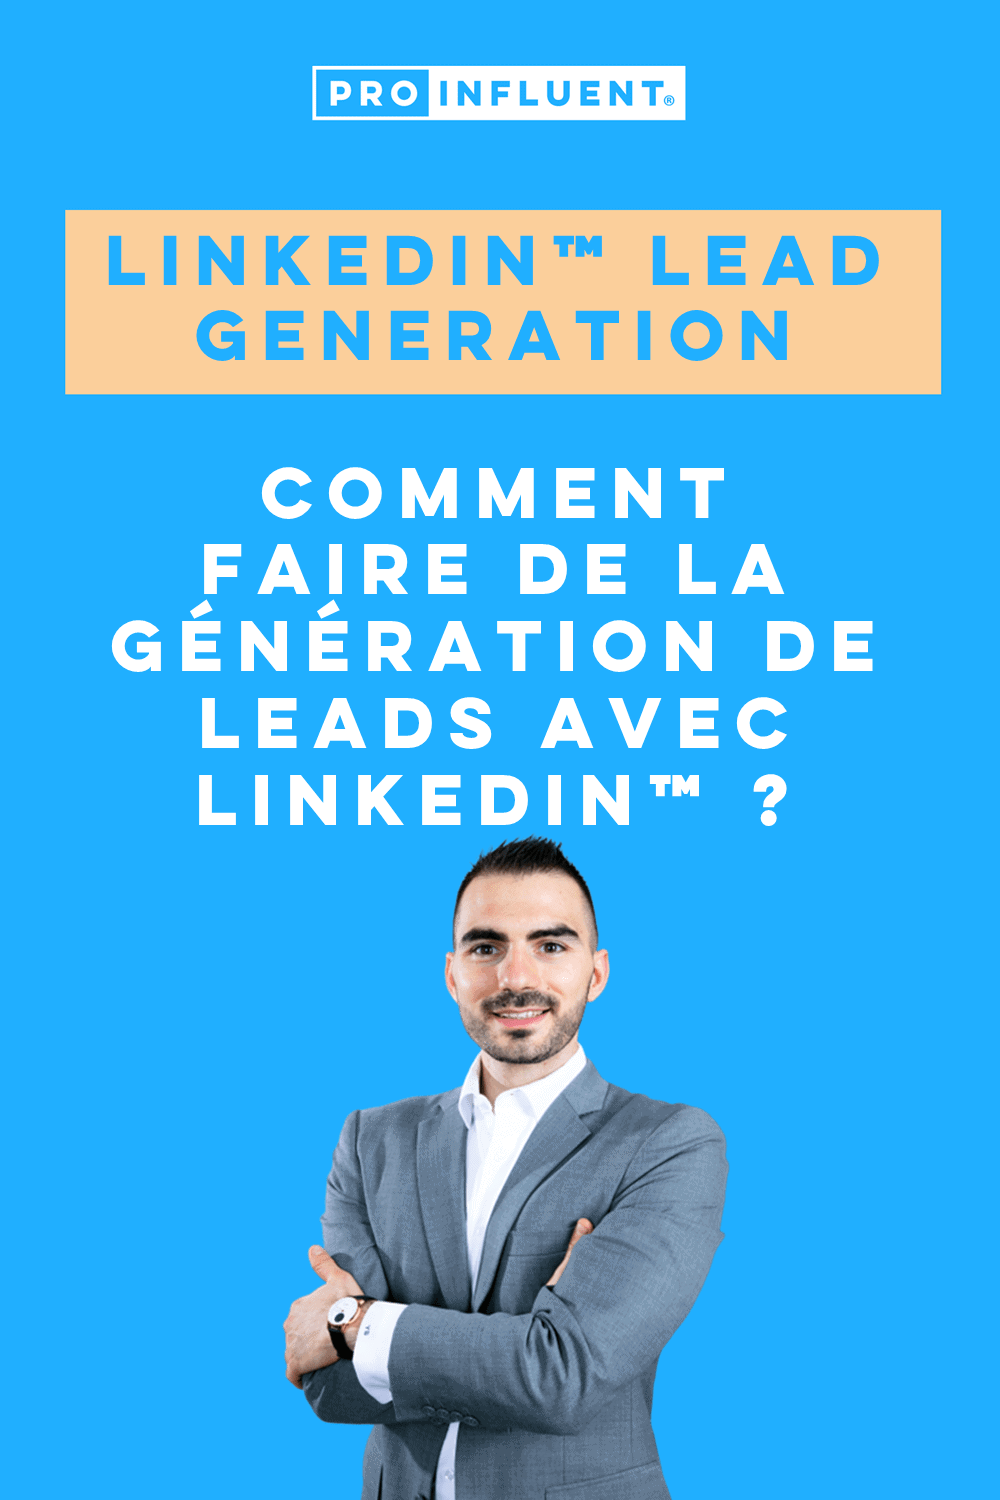 LinkedIn™ lead generation : comment faire de la génération de leads avec LinkedIn™ ?